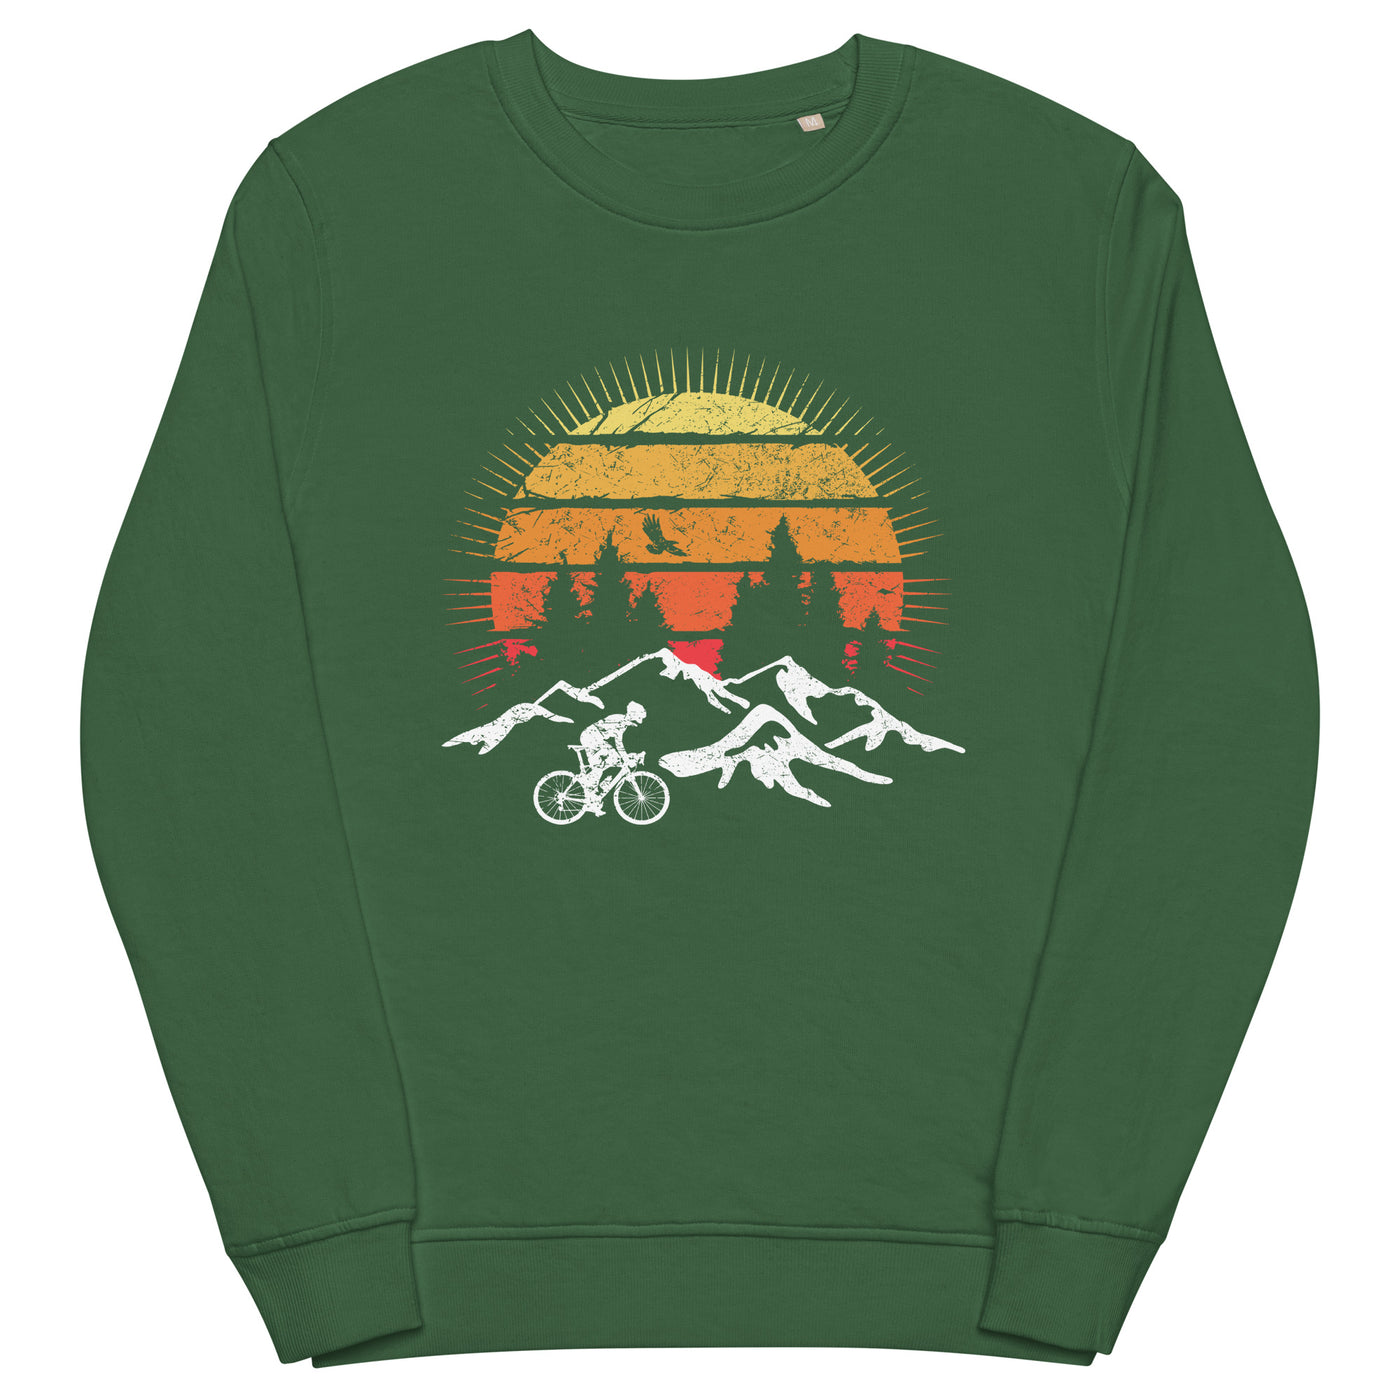 Radfahrer und Sonne Vintage - Unisex Premium Organic Sweatshirt fahrrad mountainbike Bottle Green